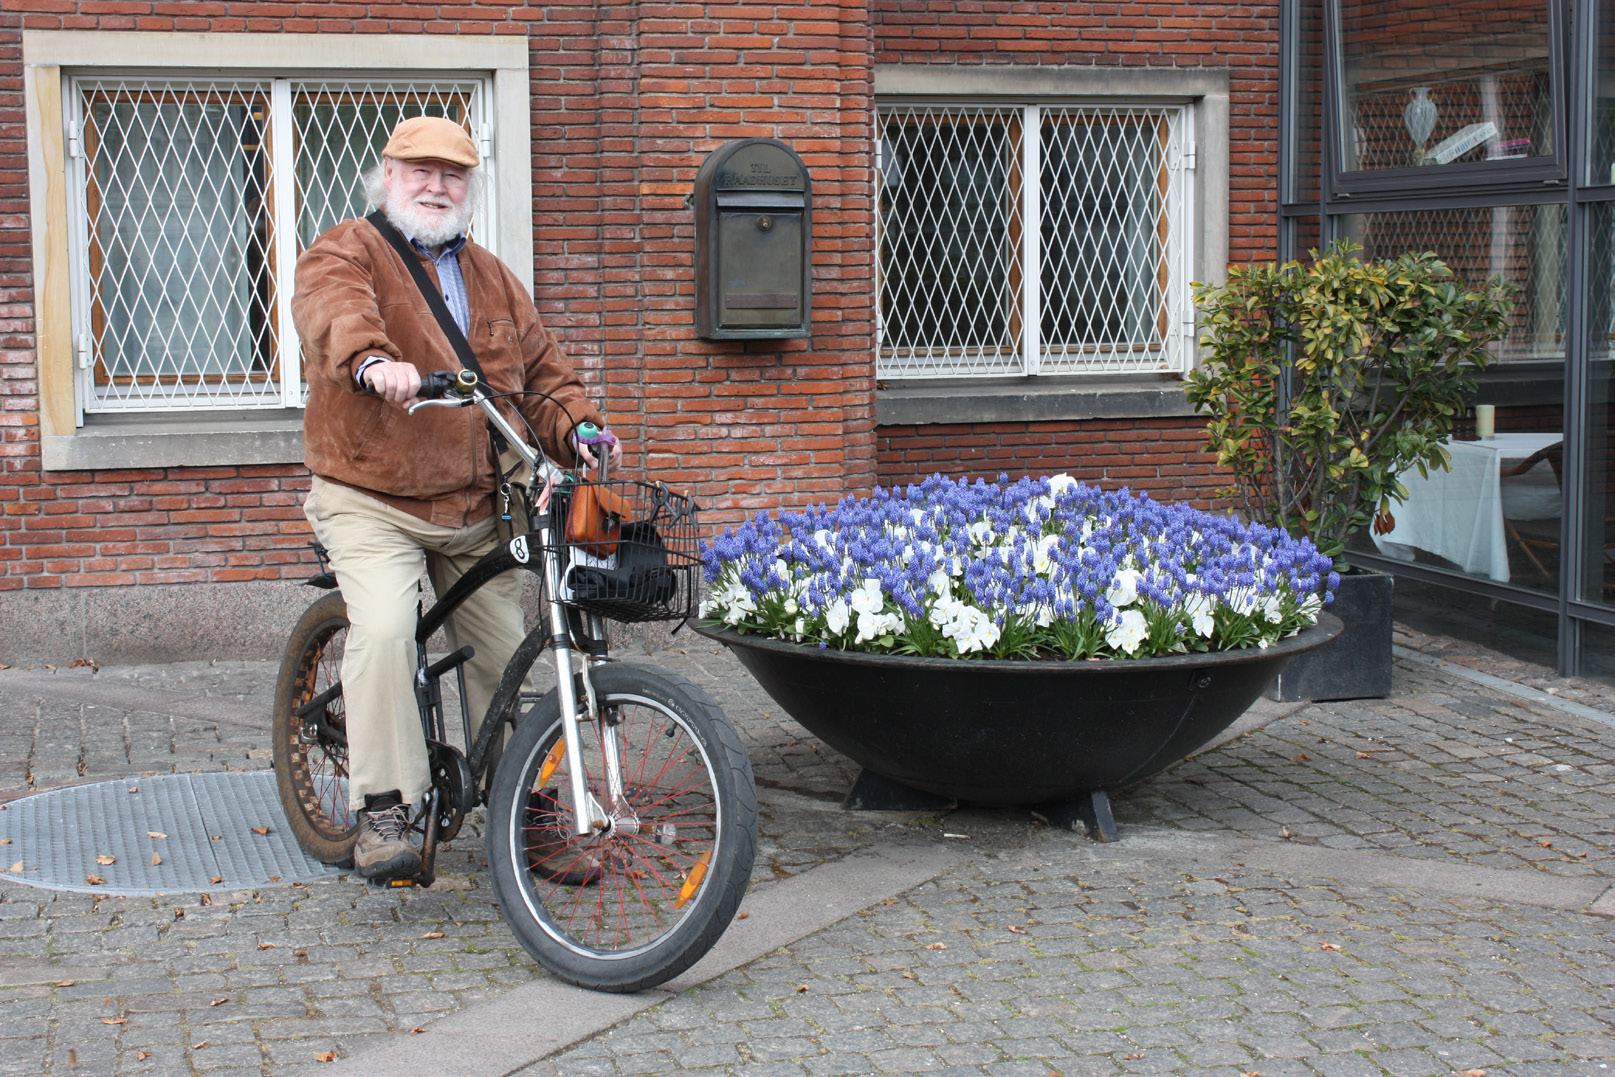 Der er behov for at vise det rette hensyn til ældre på cykelstien Hugo Vandet 80 år og medlem af Ældrerådet Bor på Peter Bangs Vej Hugo Vandet cykler dagligt på Frederiksberg og nyder at opleve byen